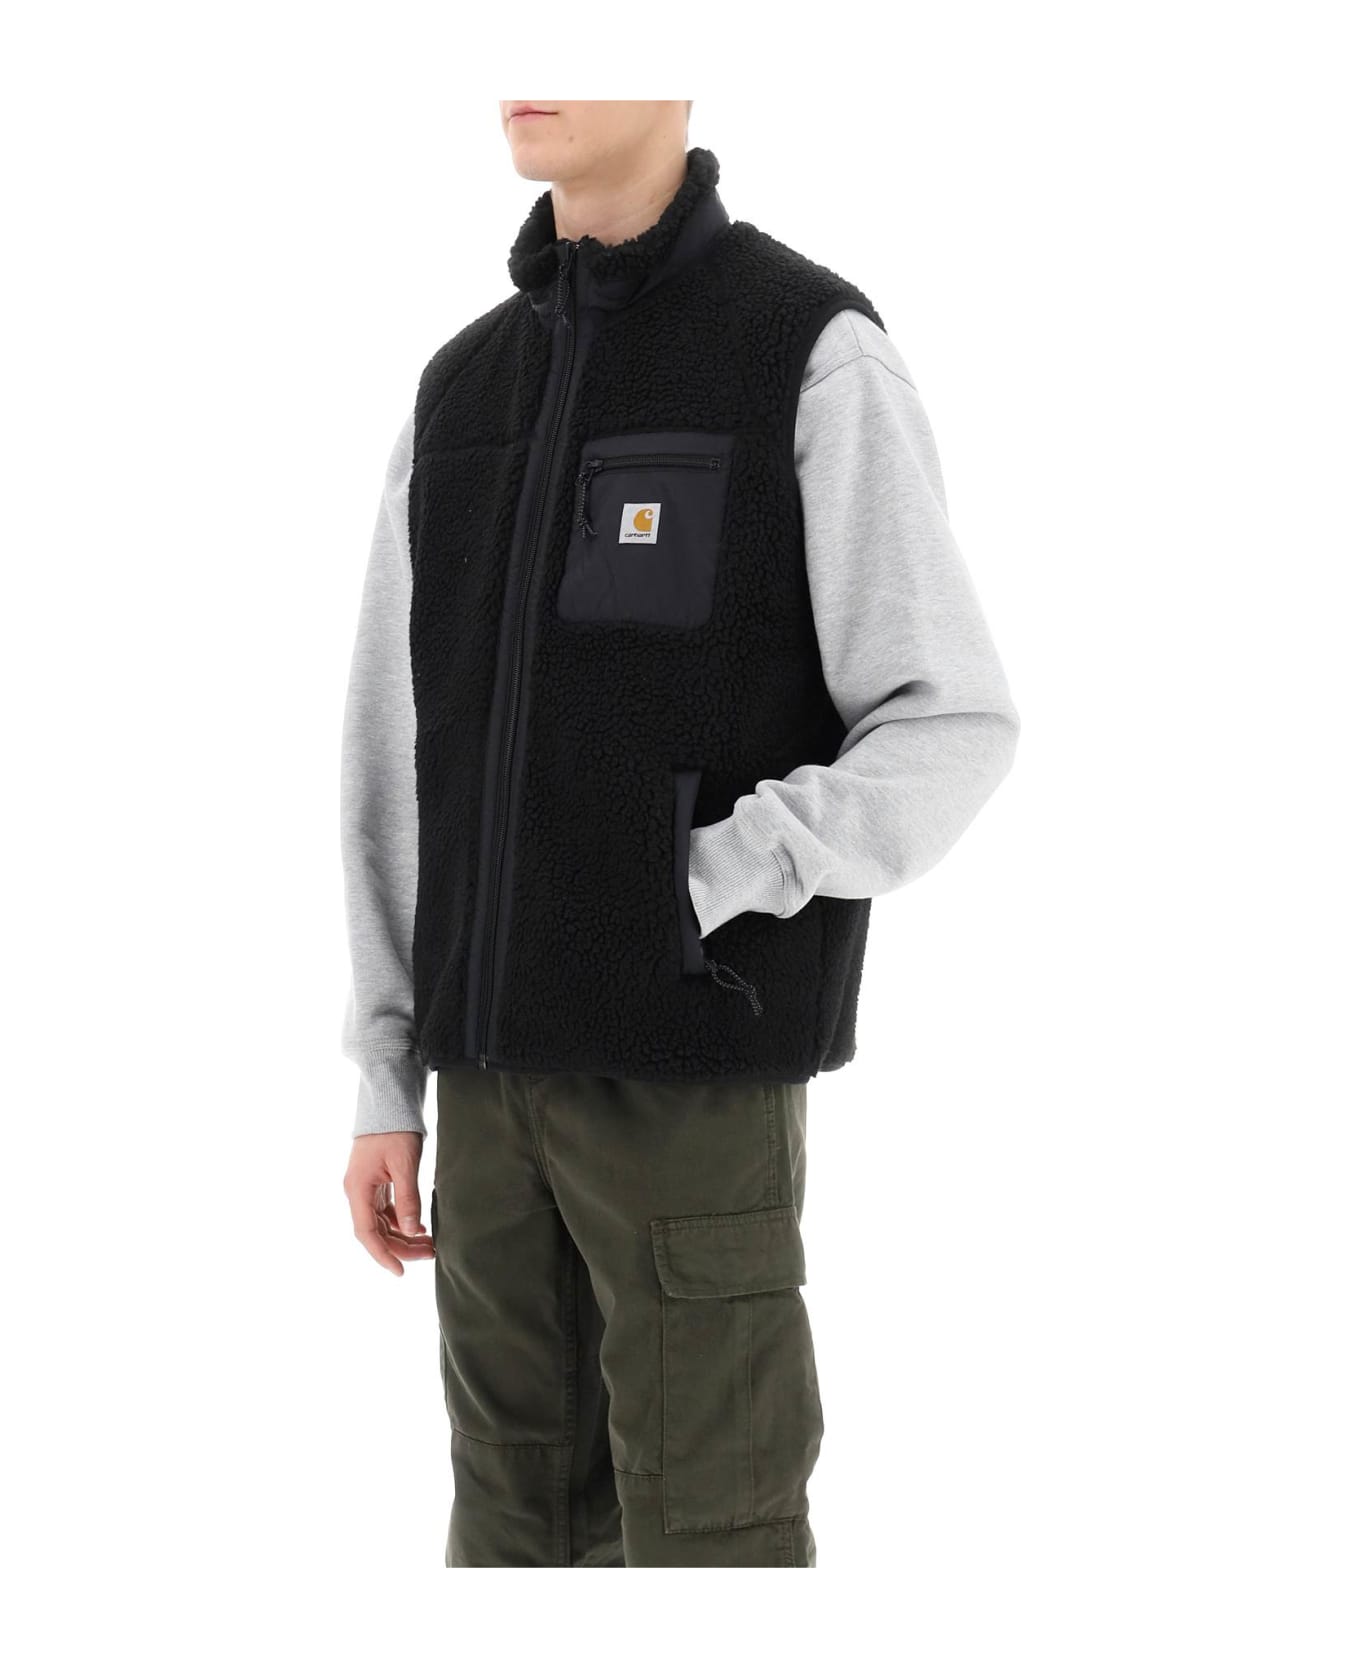 Carhartt Prentis Liner Vest In Sherpa Fleece - BLACK (Black)